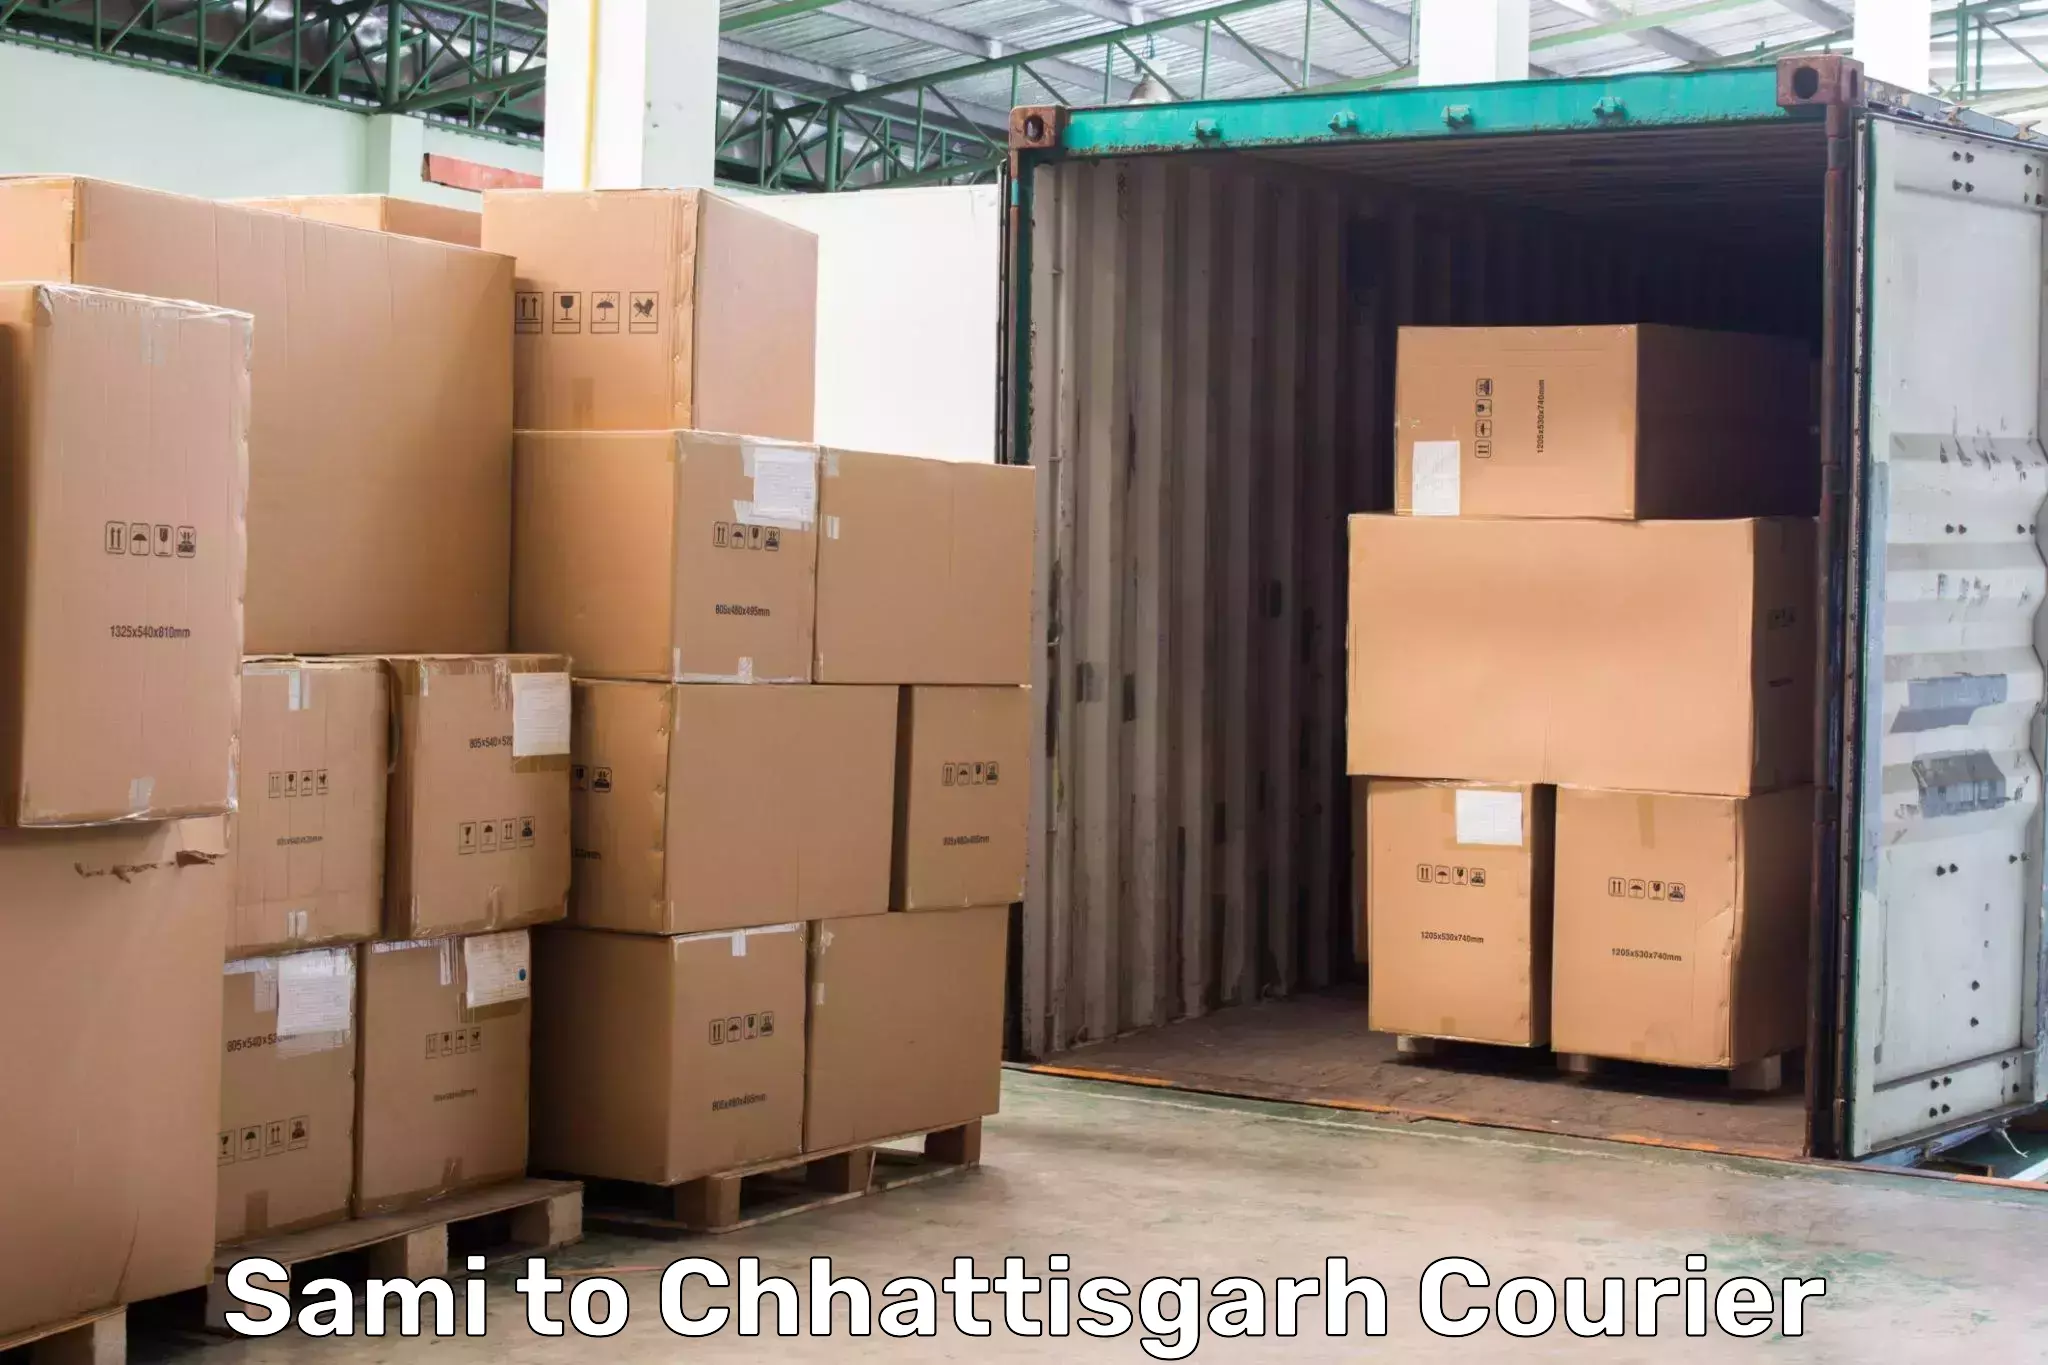 Advanced delivery network Sami to Chhattisgarh